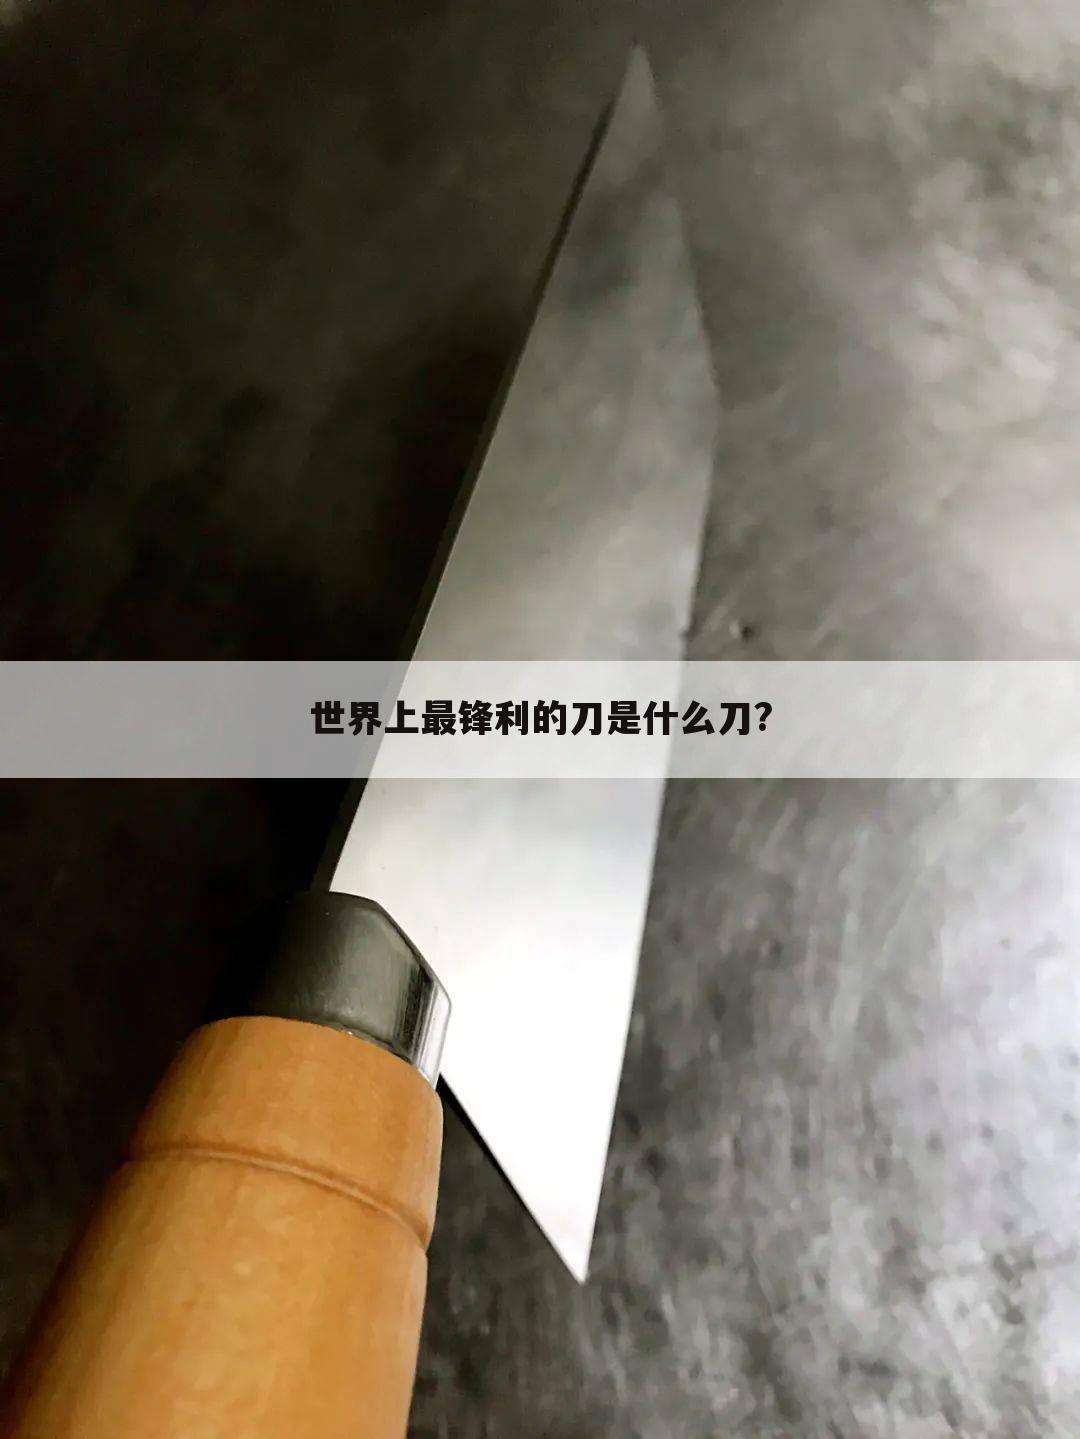 世界上最锋利的刀是什么刀?